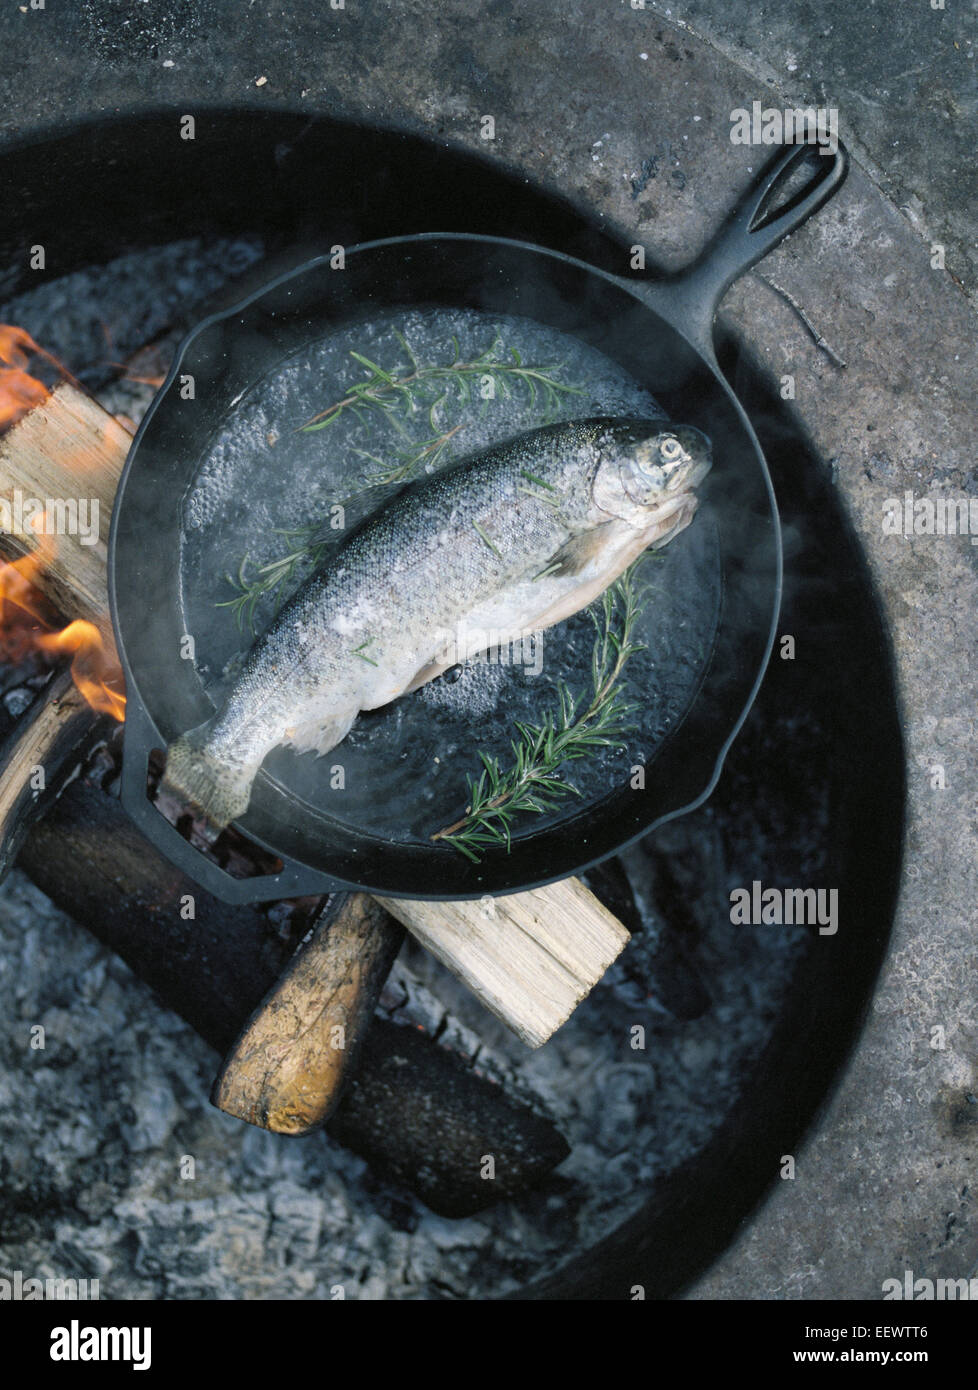 https://c8.alamy.com/comp/EEWTT6/fish-in-a-frying-pan-over-an-outdoor-fire-EEWTT6.jpg